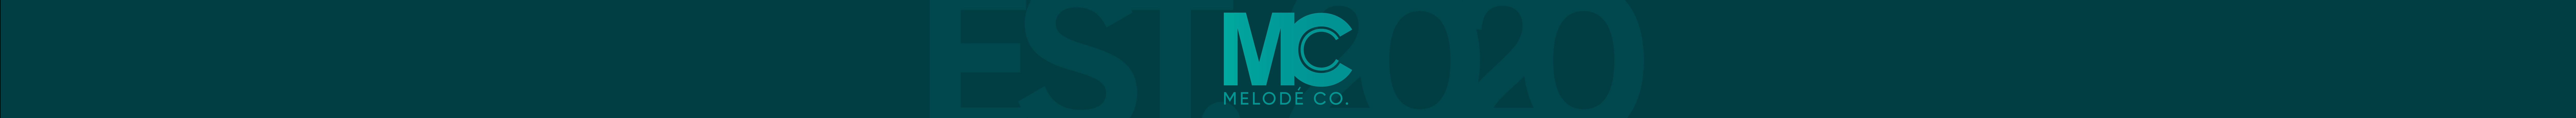 Melodé Co. 님의 프로필 배너